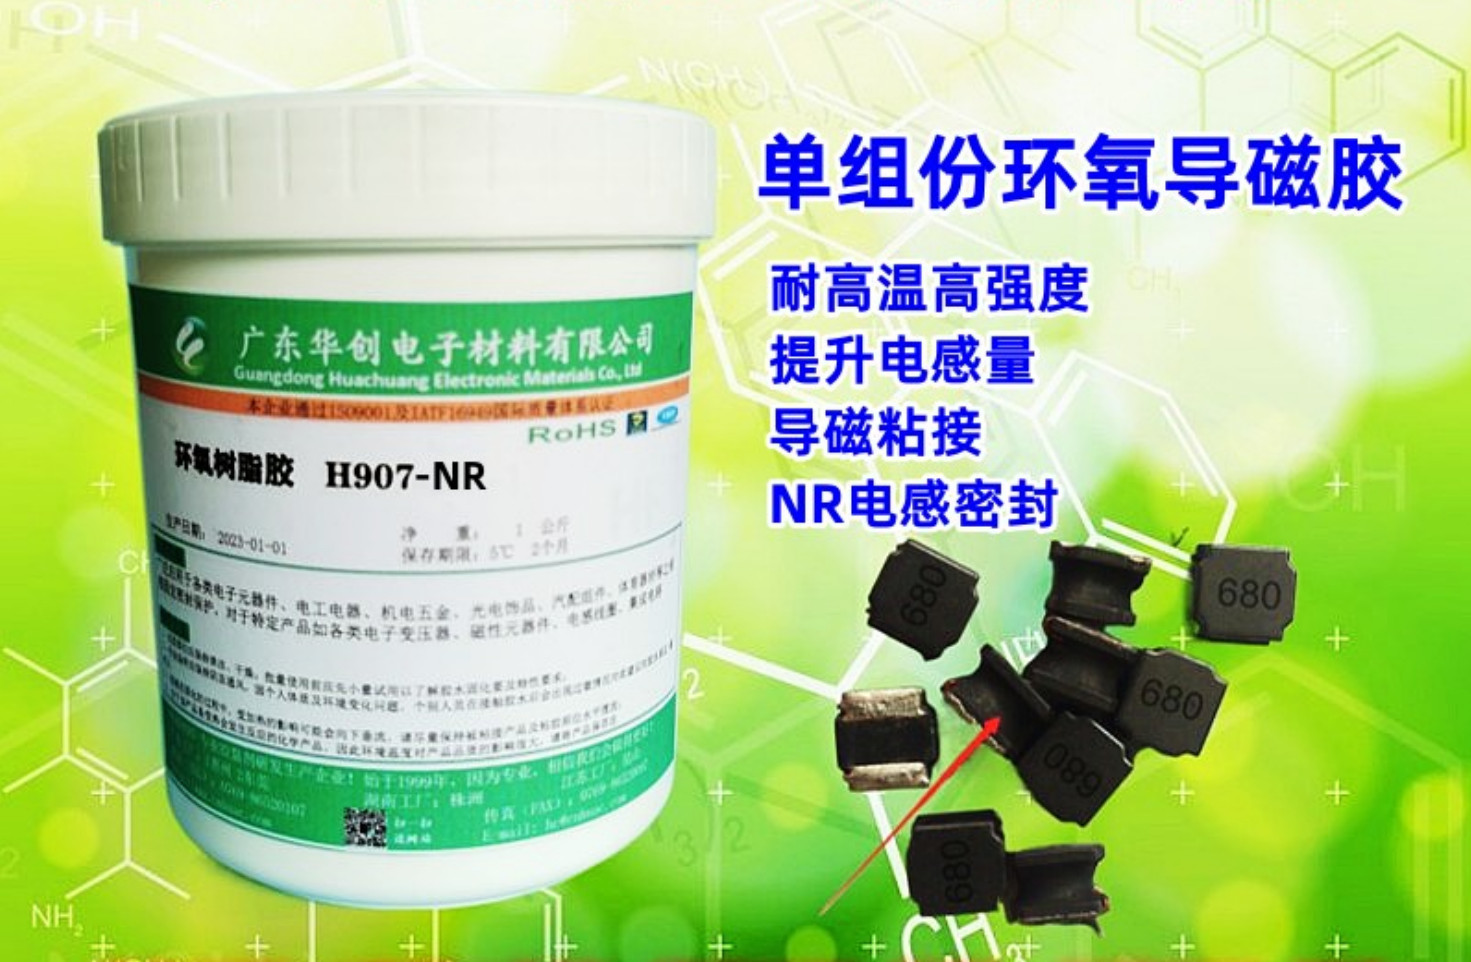 H907-RN 导磁胶 NR电感导磁粘接密封胶 提升电感量胶水 变压器导磁胶